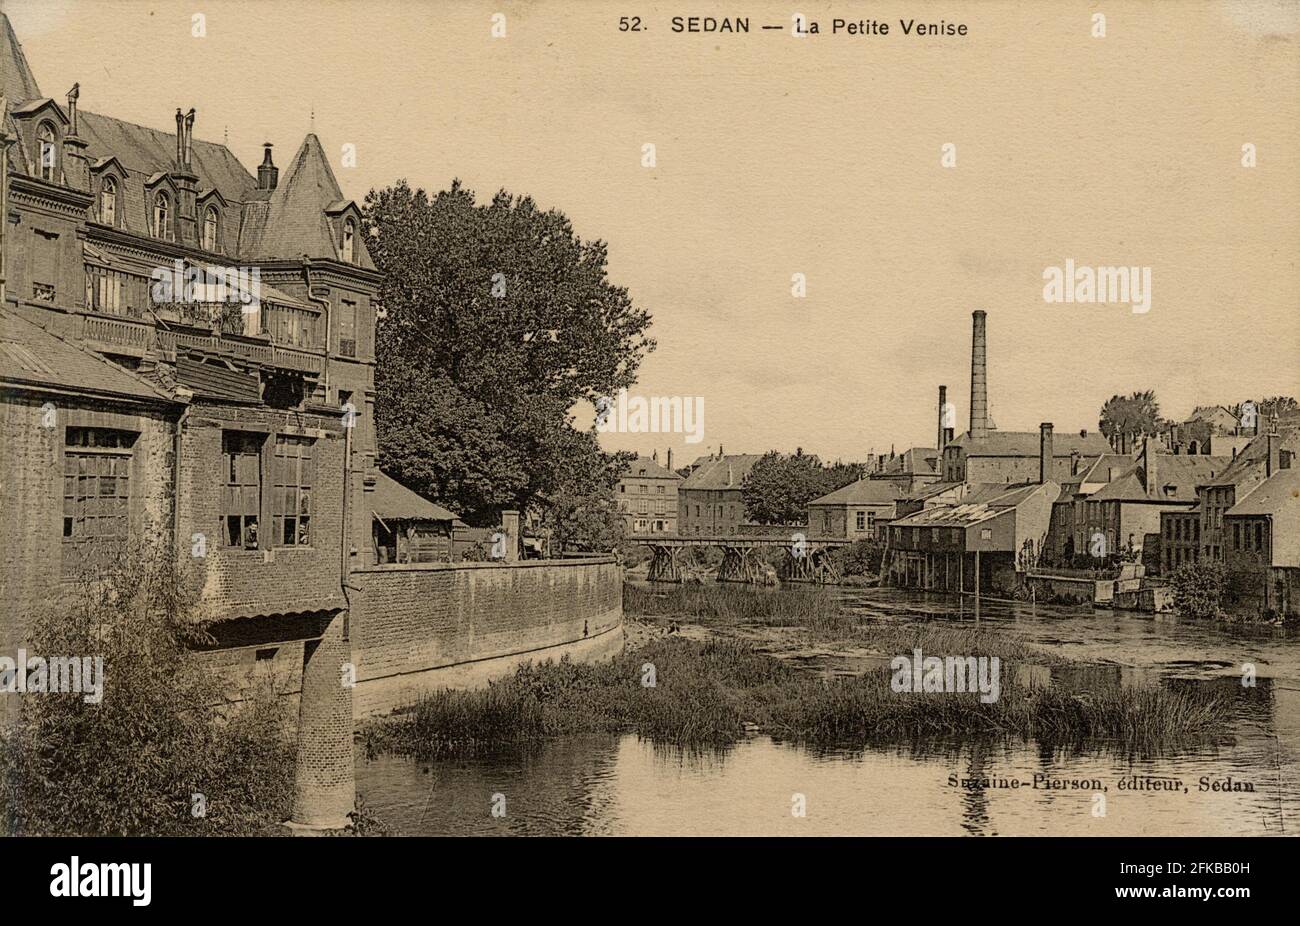 LIMOUSINE. Französische Abteilung: 08 - Ardennen Postkarte Ende des 19. Jahrhunderts - Anfang des 20. Jahrhunderts Stockfoto